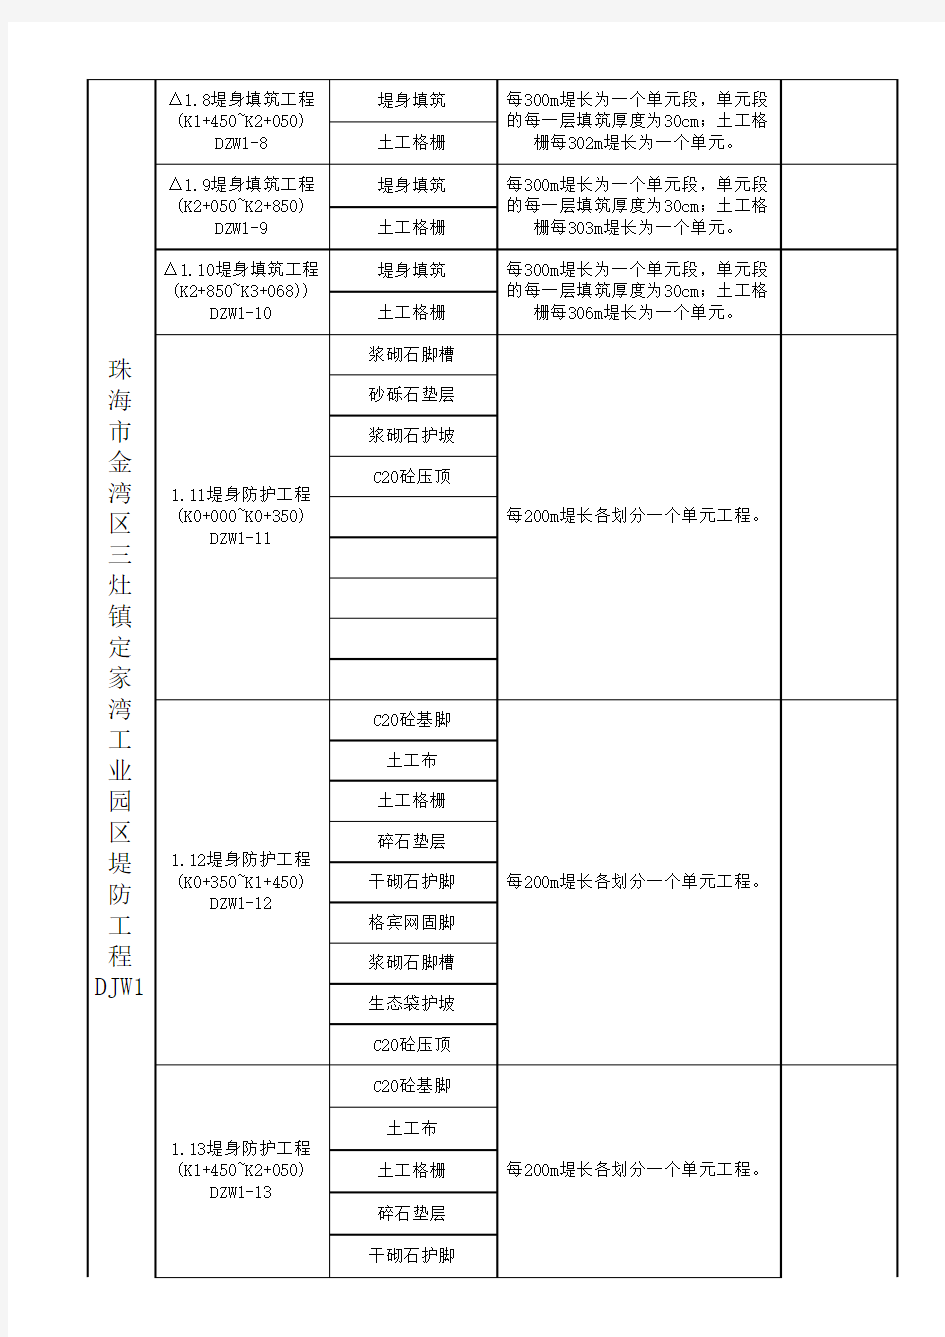 堤防工程项目划分表